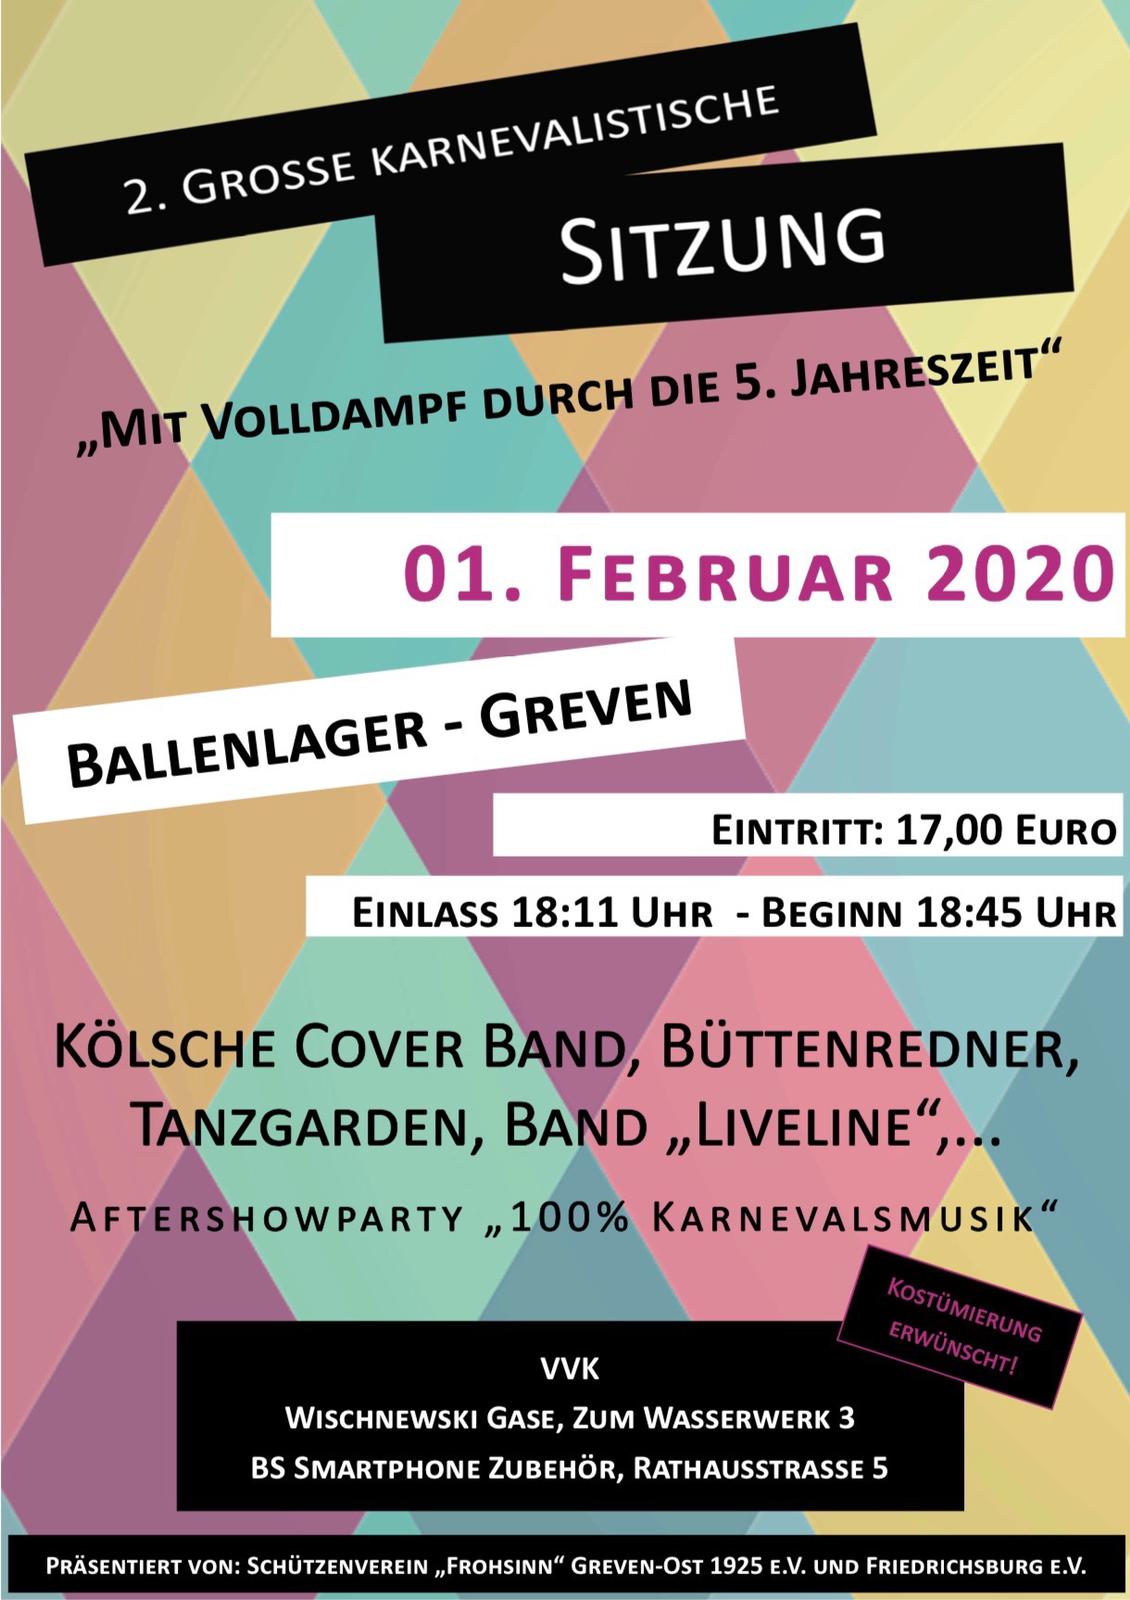 2019_10_27_karnevalistische_sitzung_2020_2.jpg